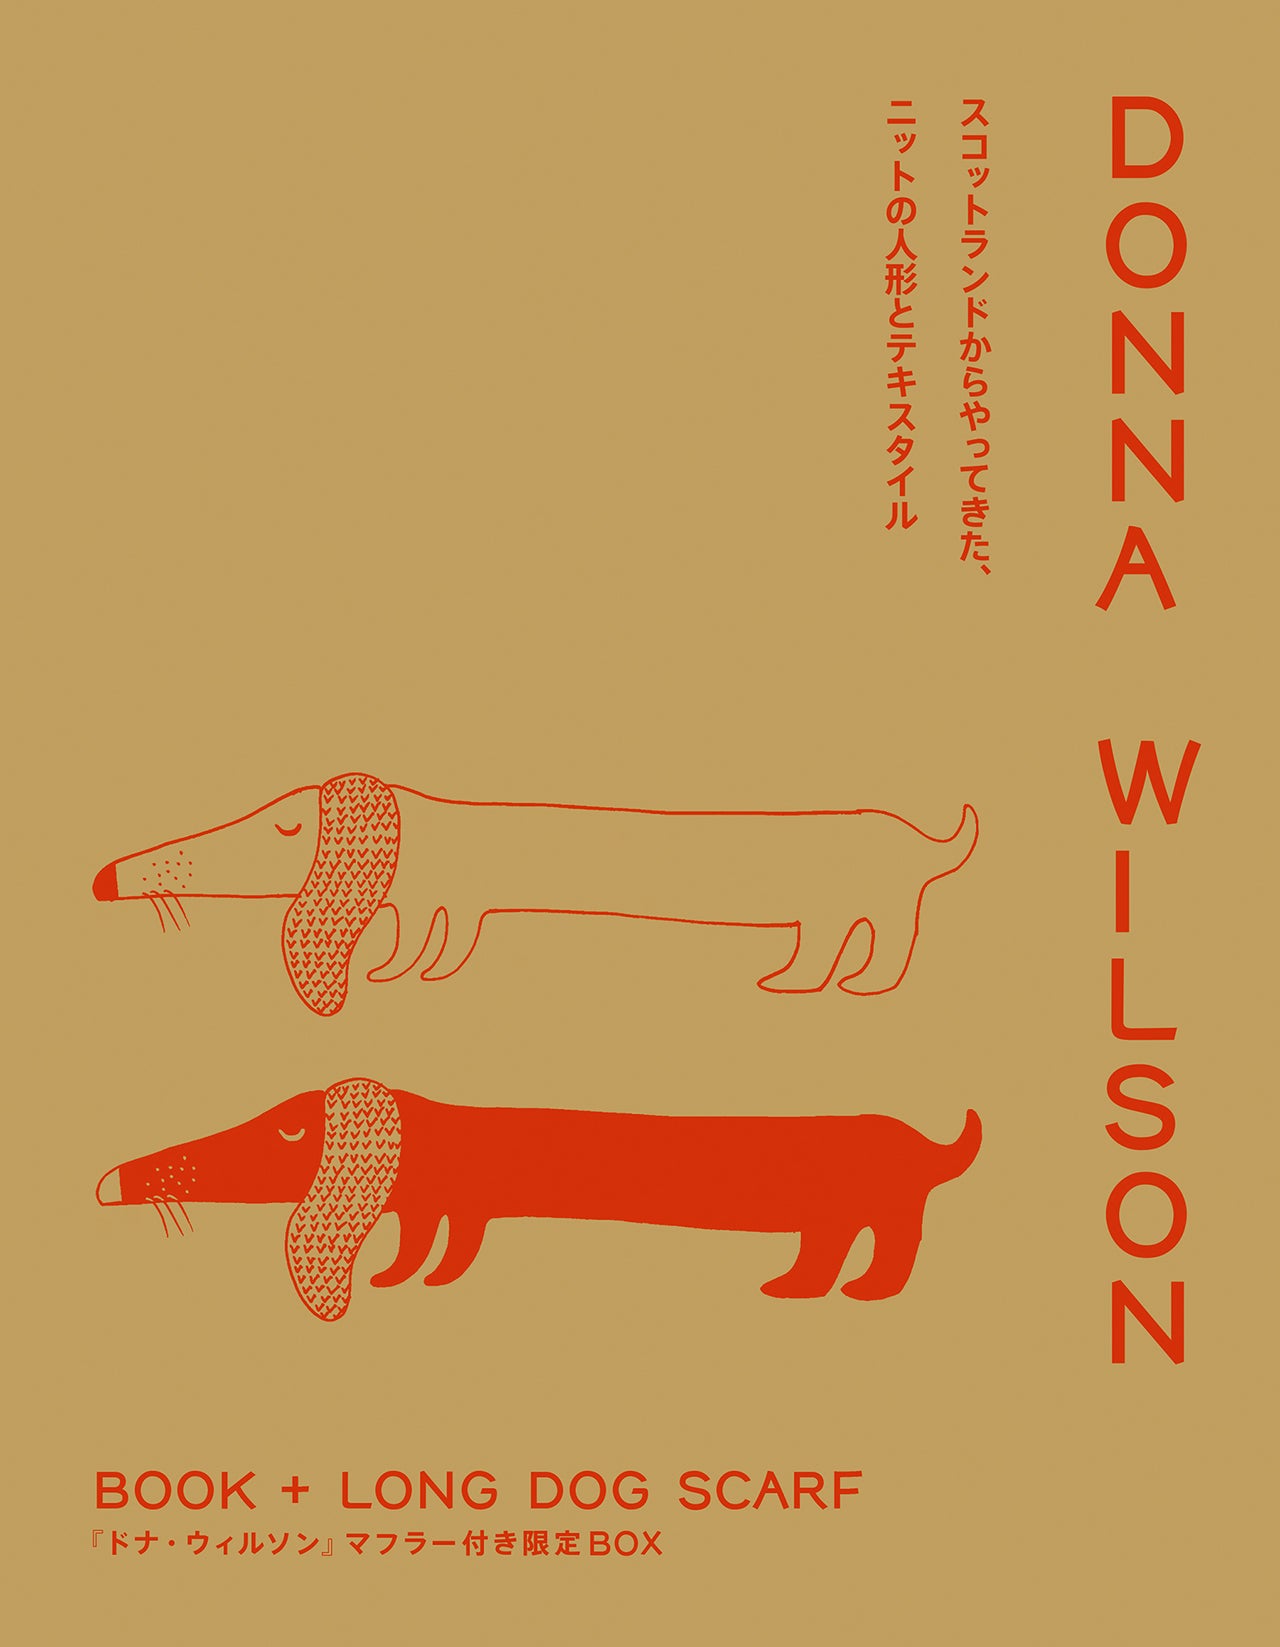 BOOK + LONG DOG SCARF ドナ・ウィルソン マフラー付き限定BOX | 株式